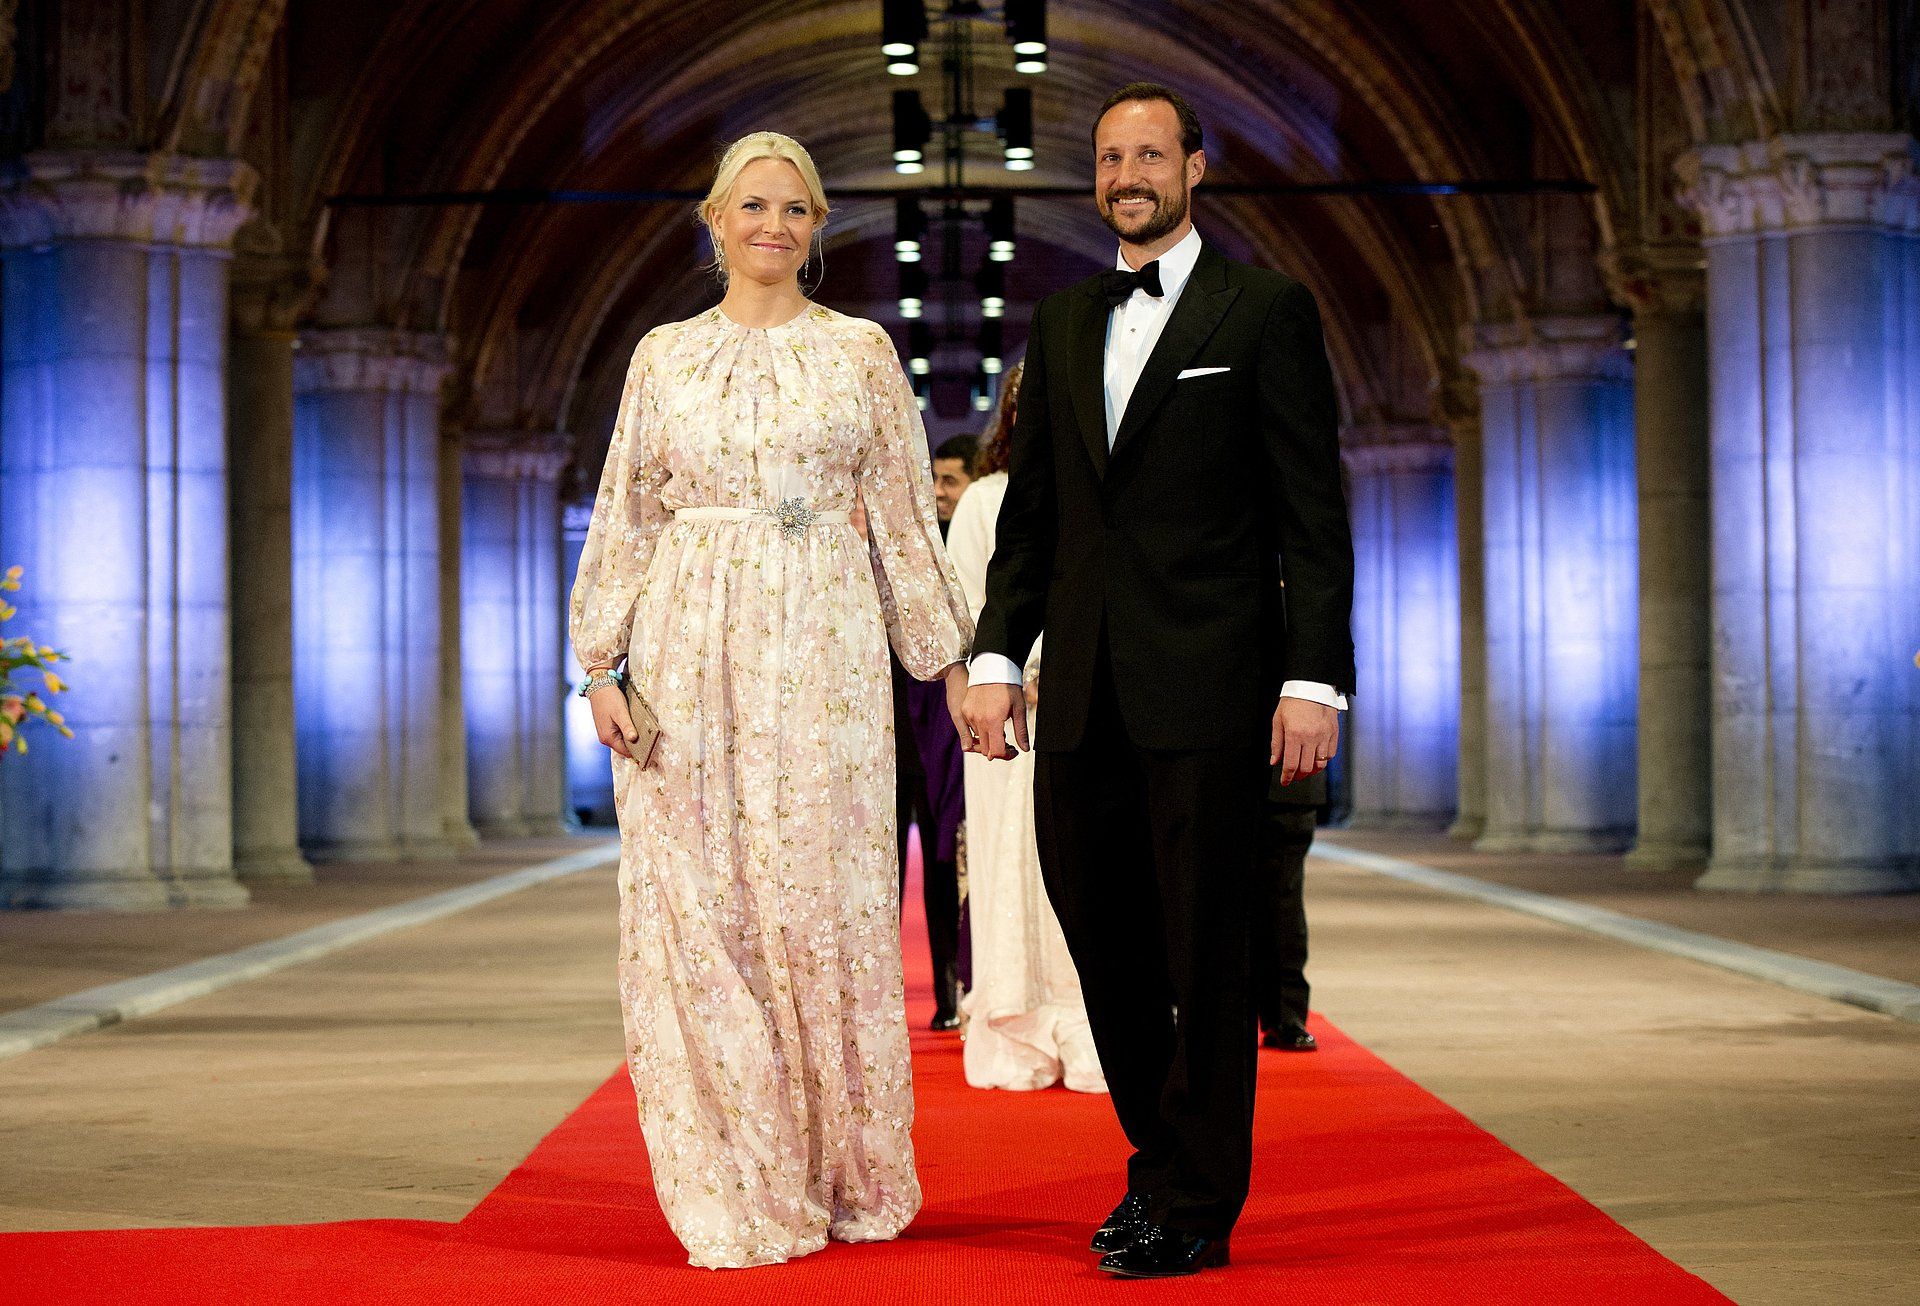 Prinses Mette-Marit en kroonprins Haakon komen aan bij het diner in het Rijksmuseum.